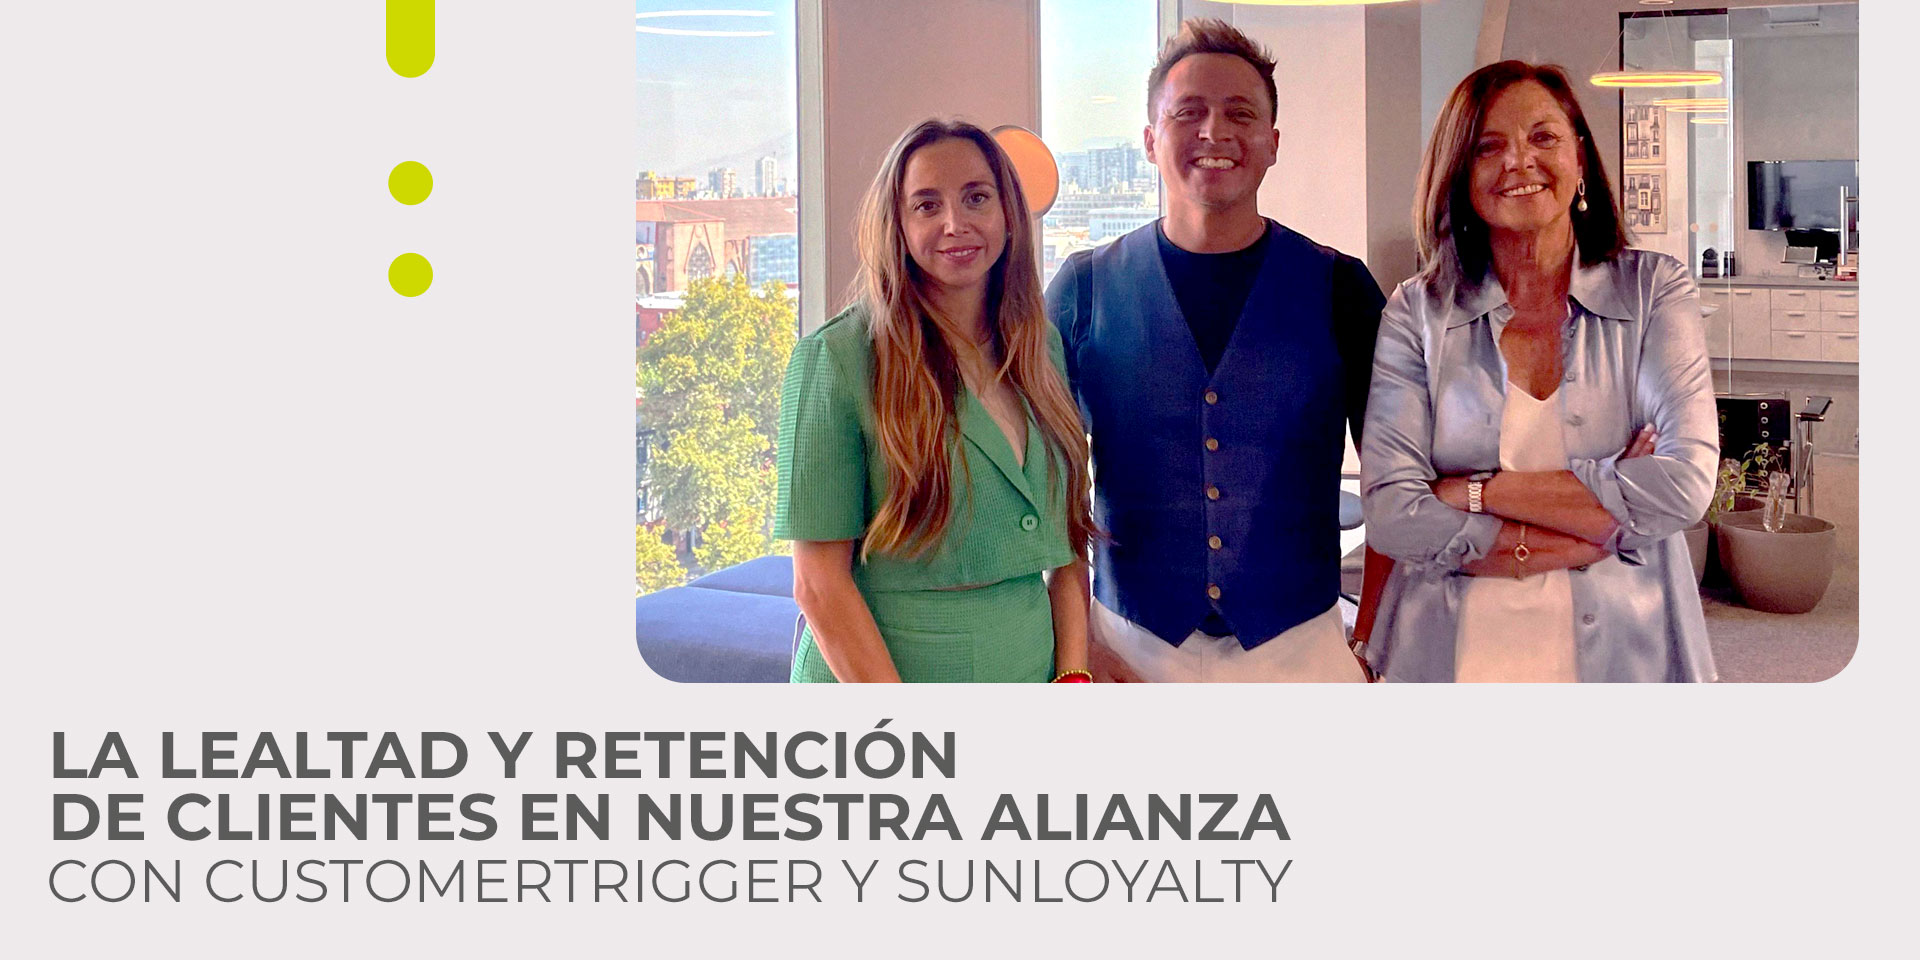 La lealtad y retención de clientes en nuestra alianza con CustomerTrigger y Sunloyalty